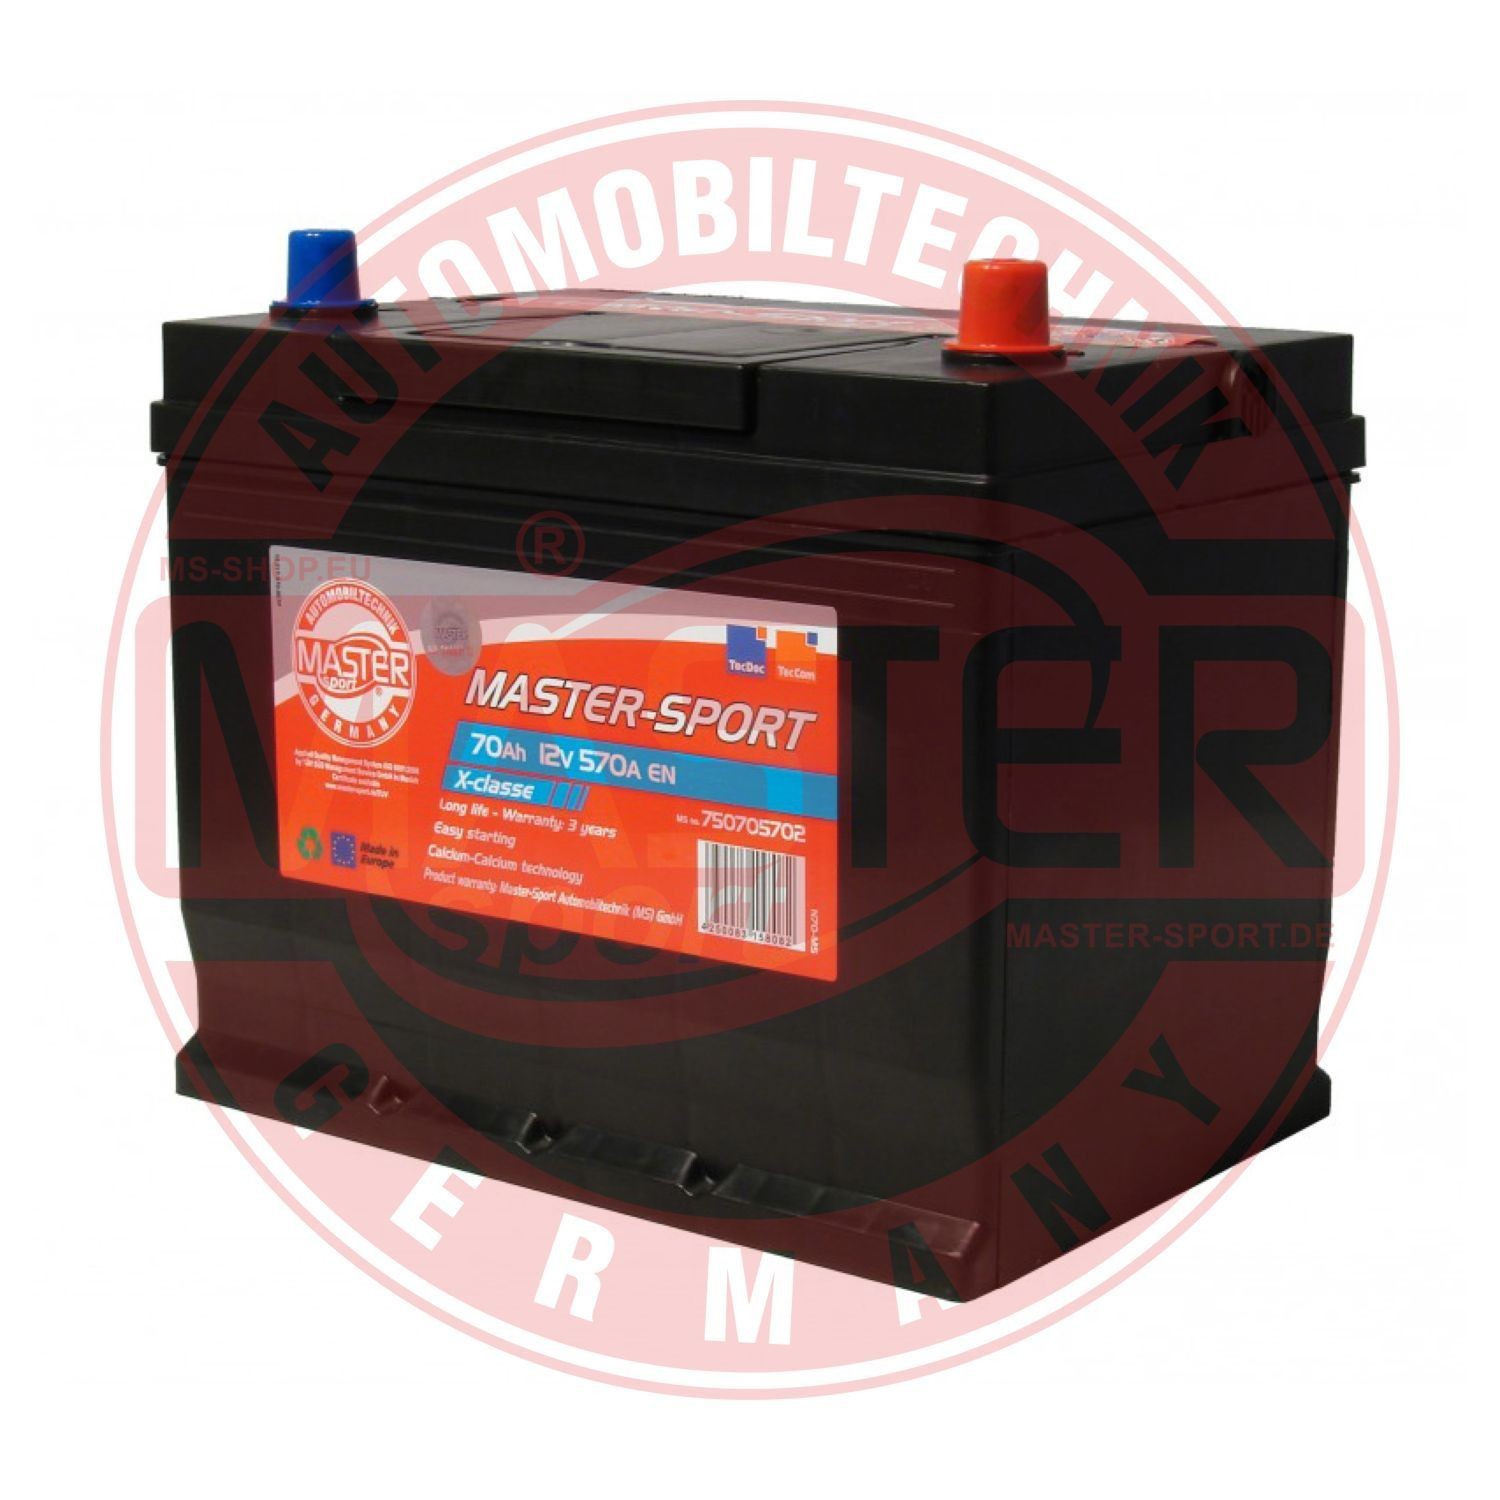 750705702 MASTER-SPORT Car battery JAGUAR 12V 70Ah 570A B01